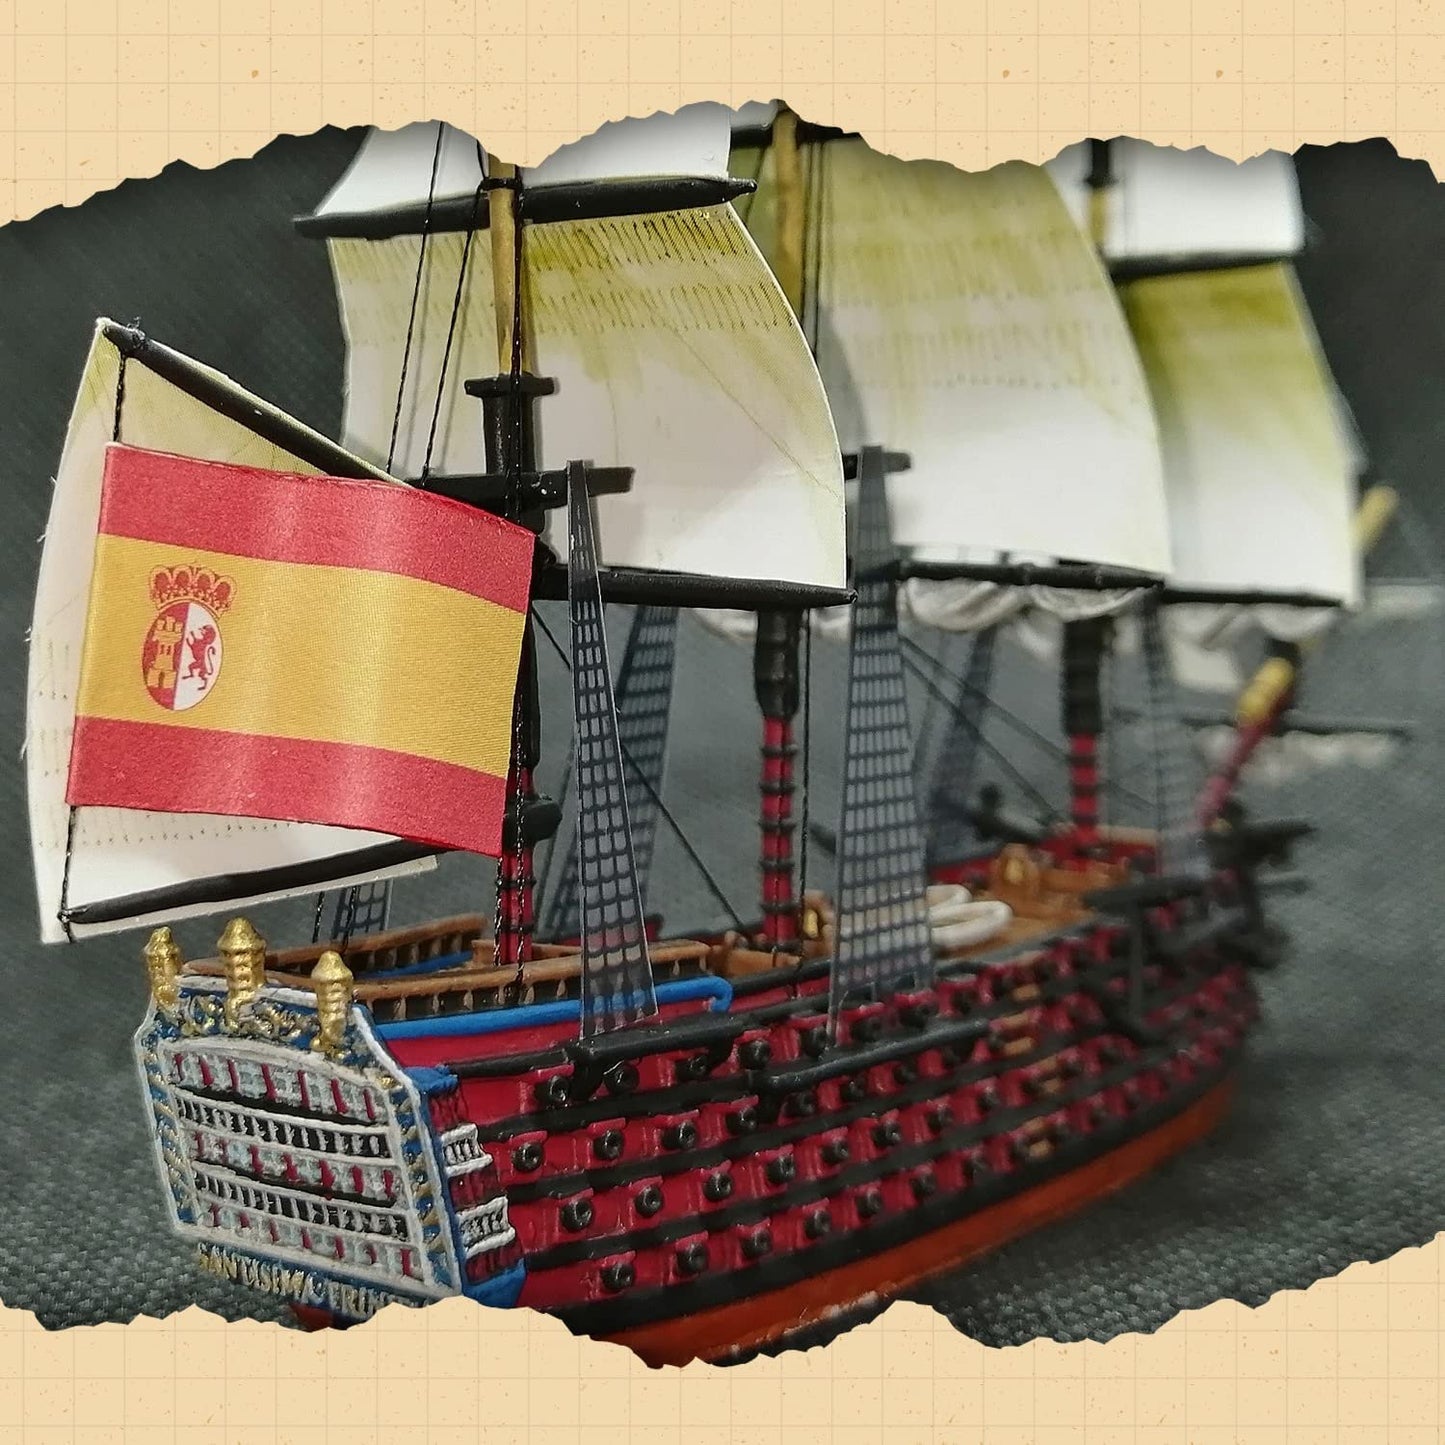 Black Seas - Spanish Fleet: Santisima Trinidad (1770 - 1830)